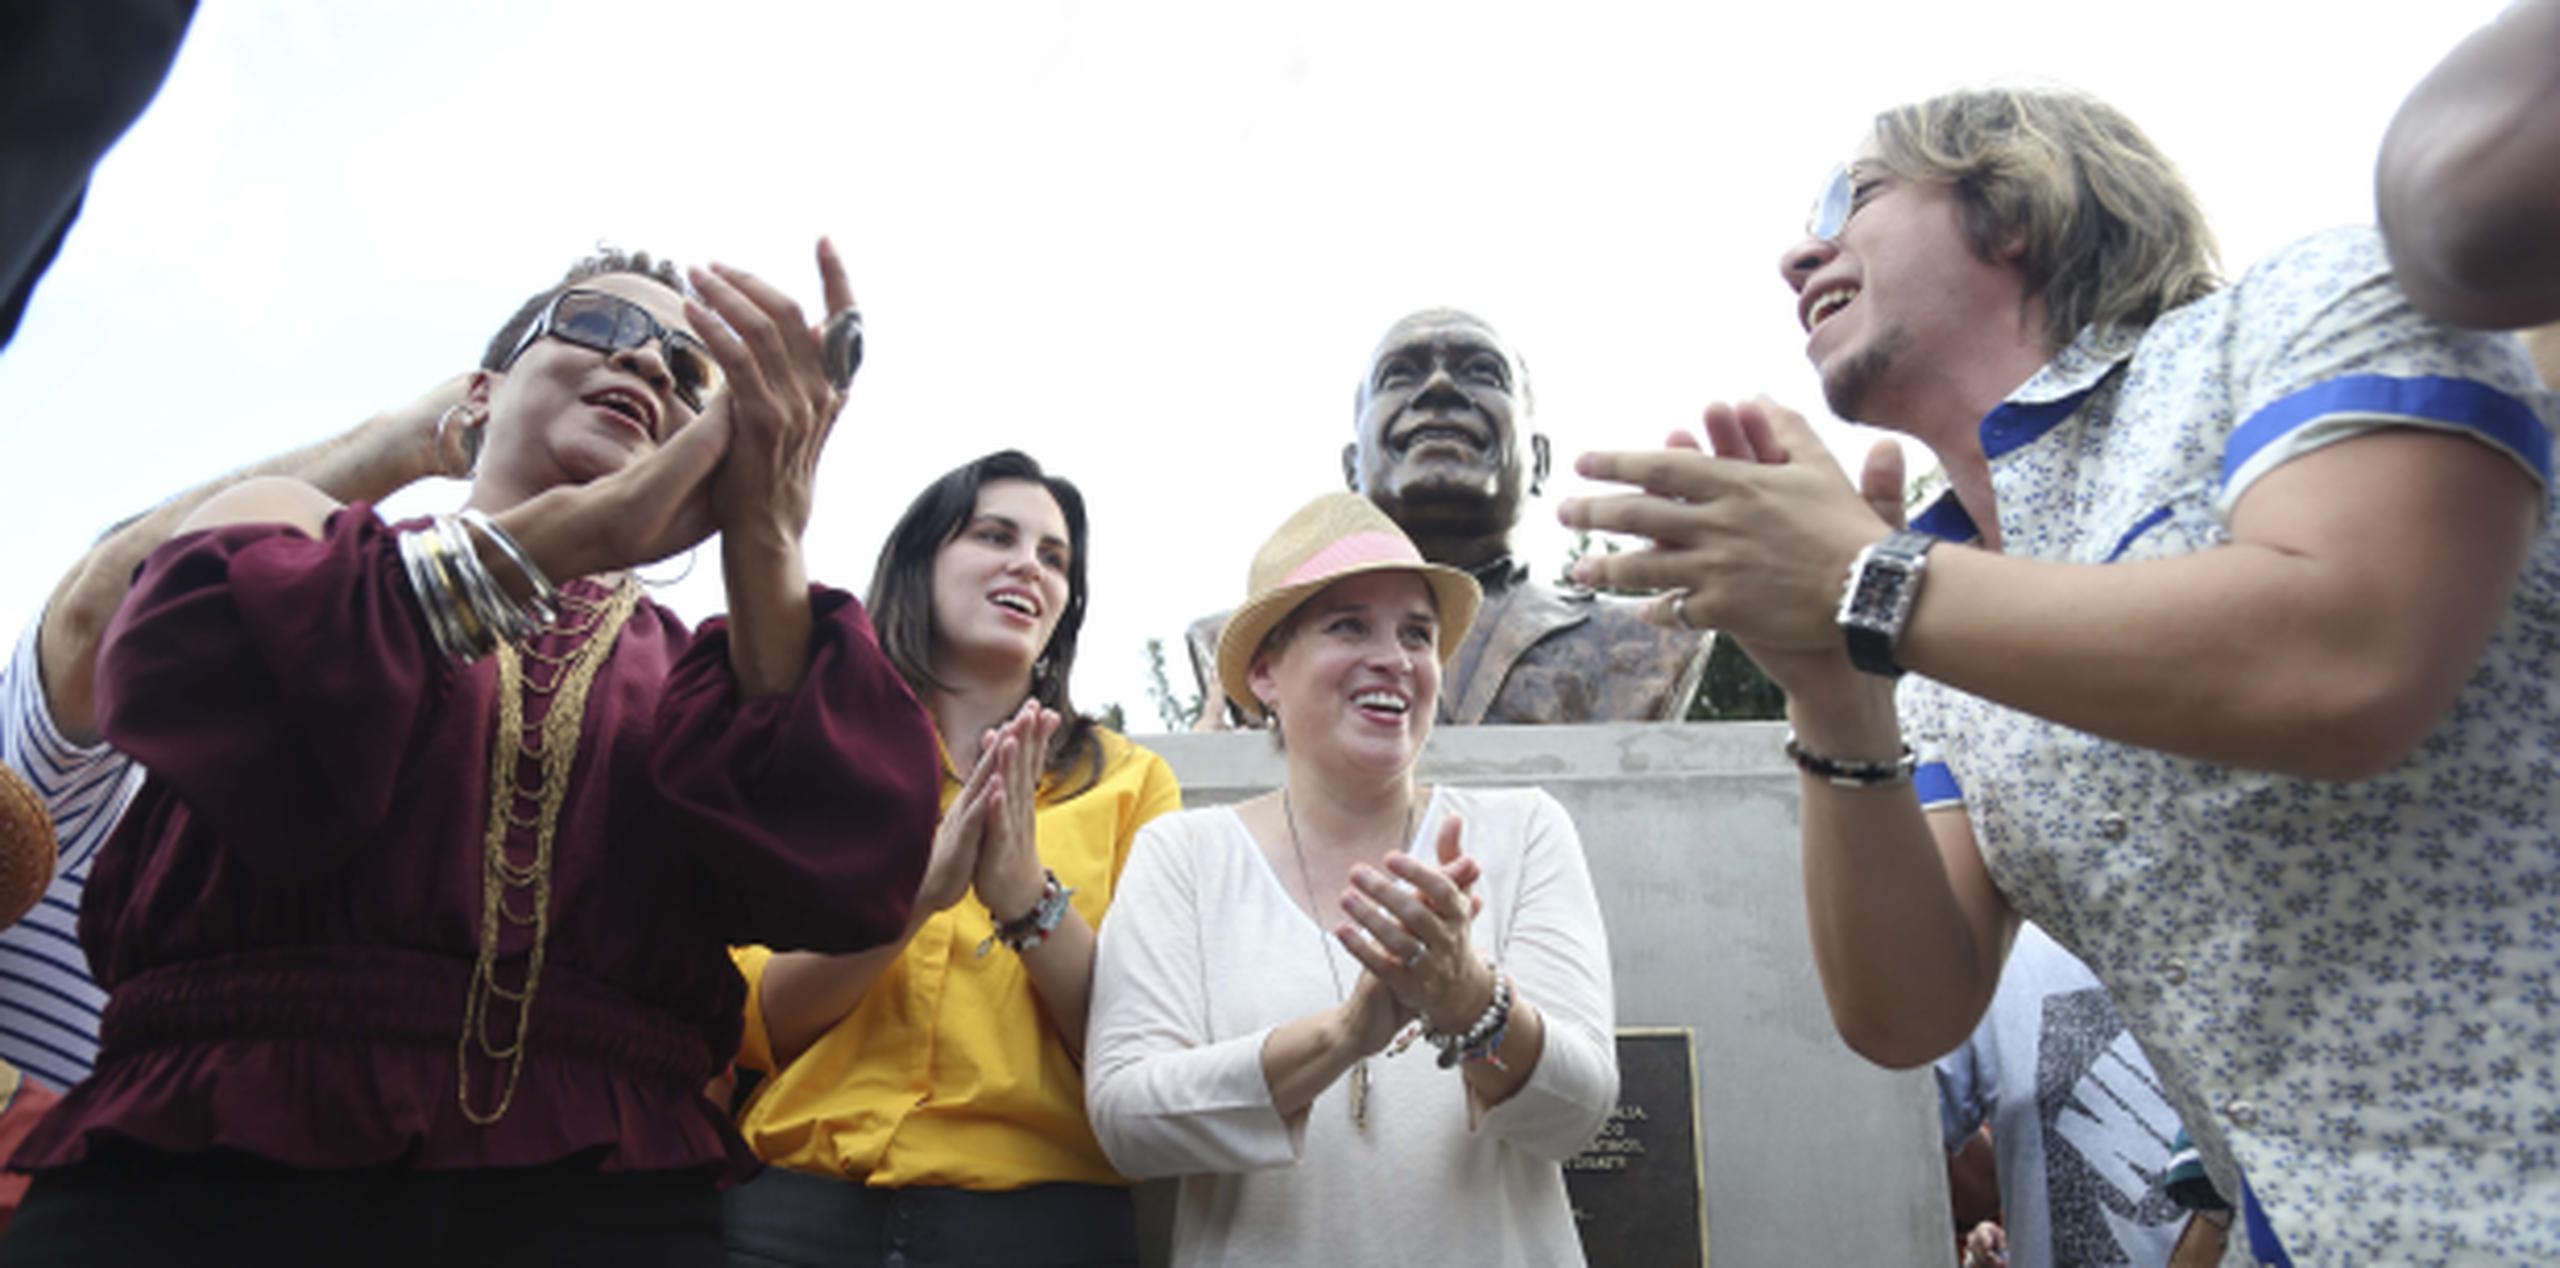 La alcaldesa de San Juan, Carmen Yulín Cruz (centro), junto a Choco Orta y José Juan Hernández tras develar el busto. (Foto/ Wanda Liz Vega)